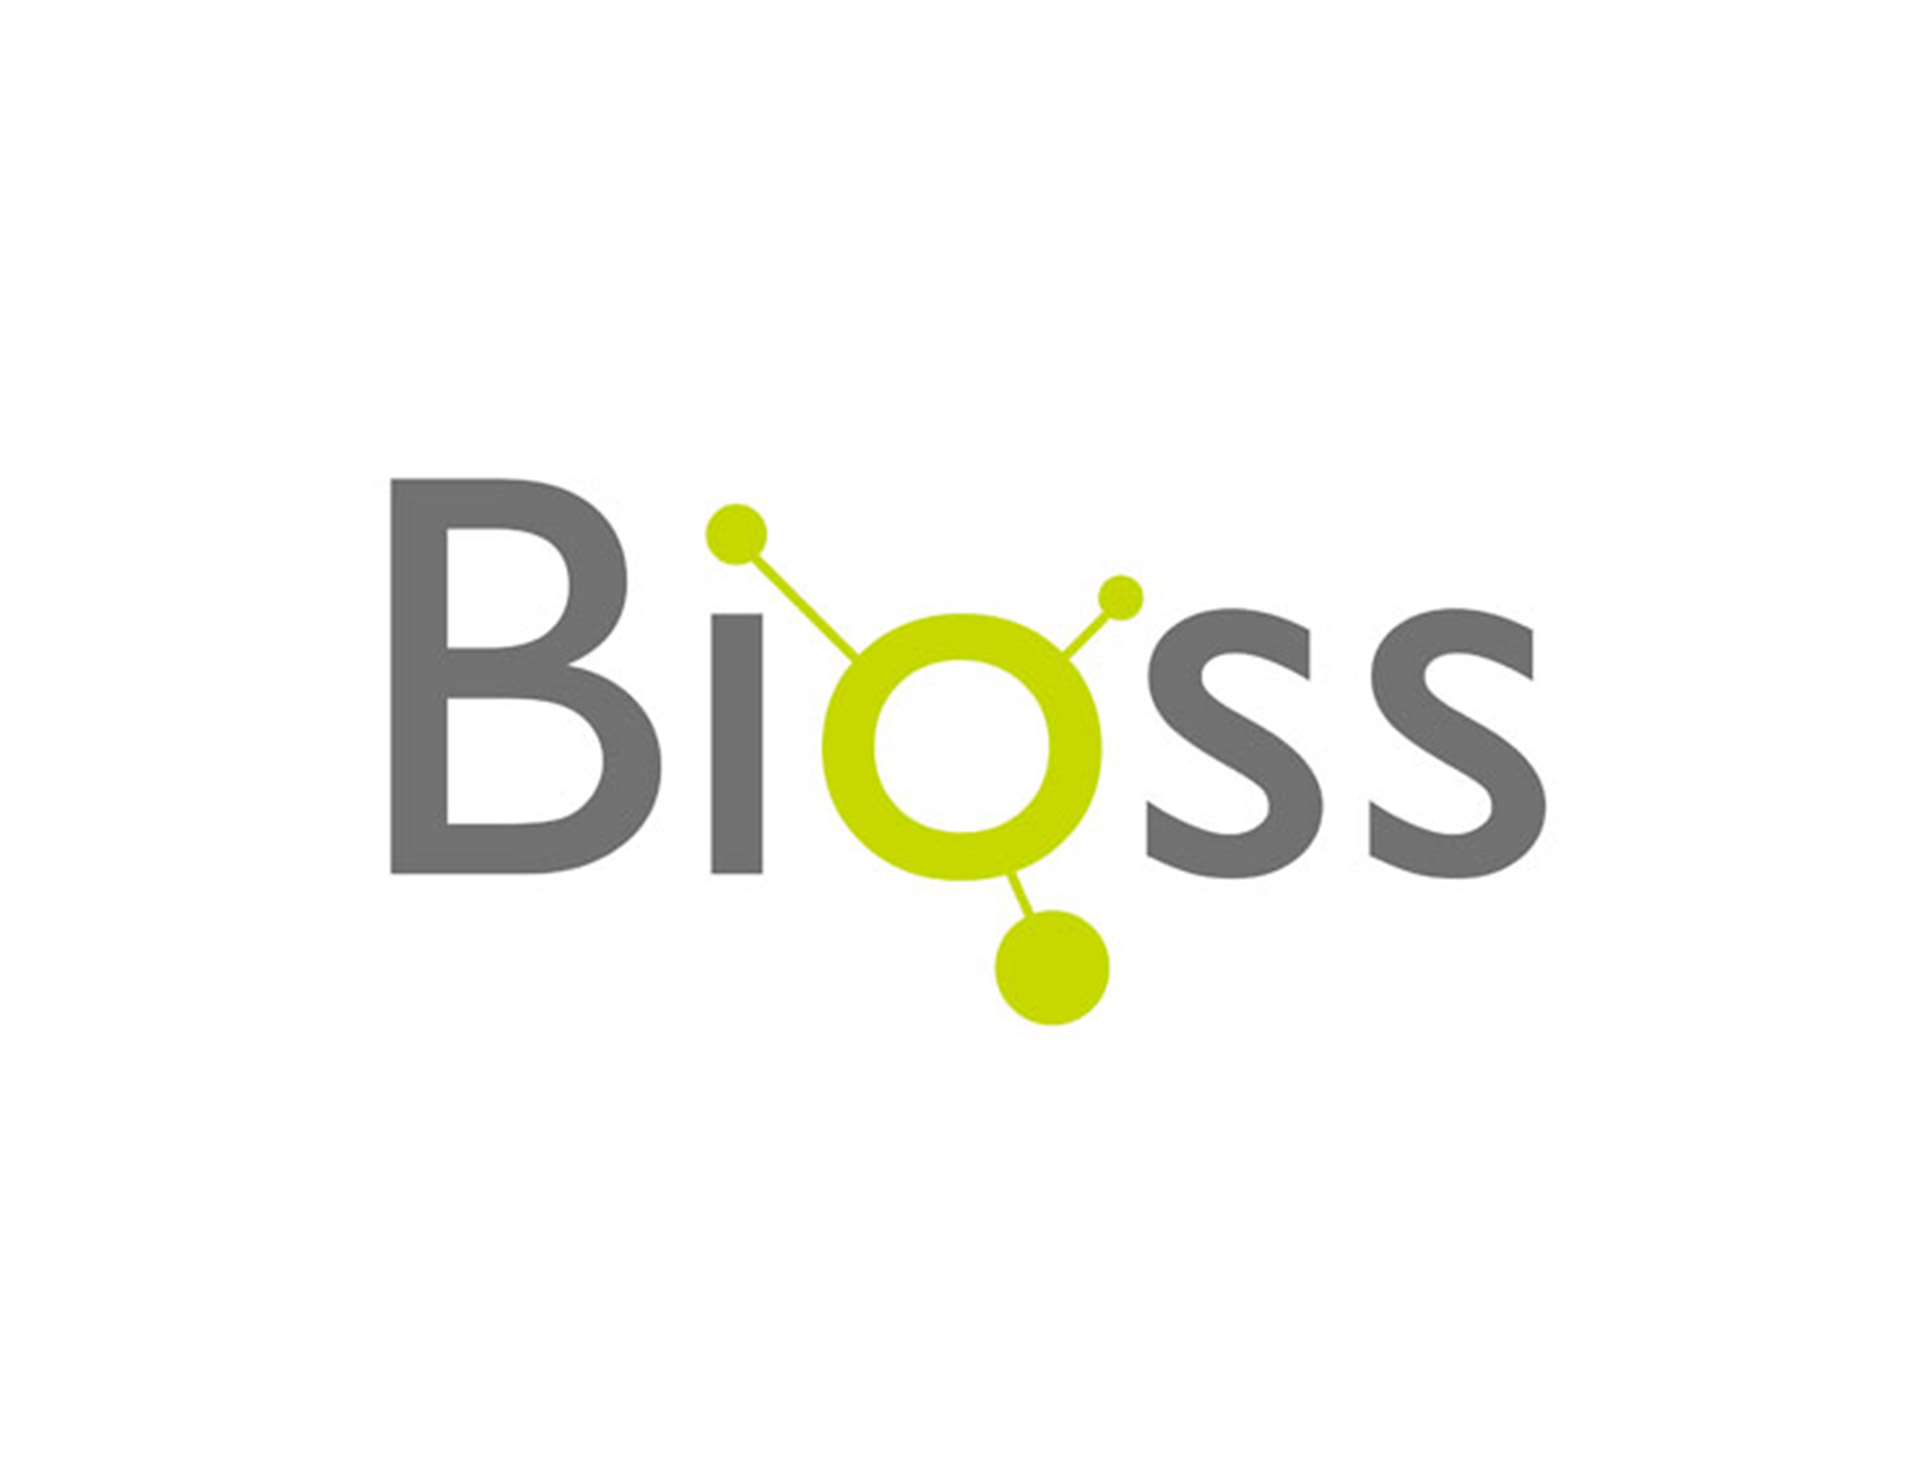 北京博奥森生物技术公司创意设计是以简称BIOSS中的O字母进行图形化